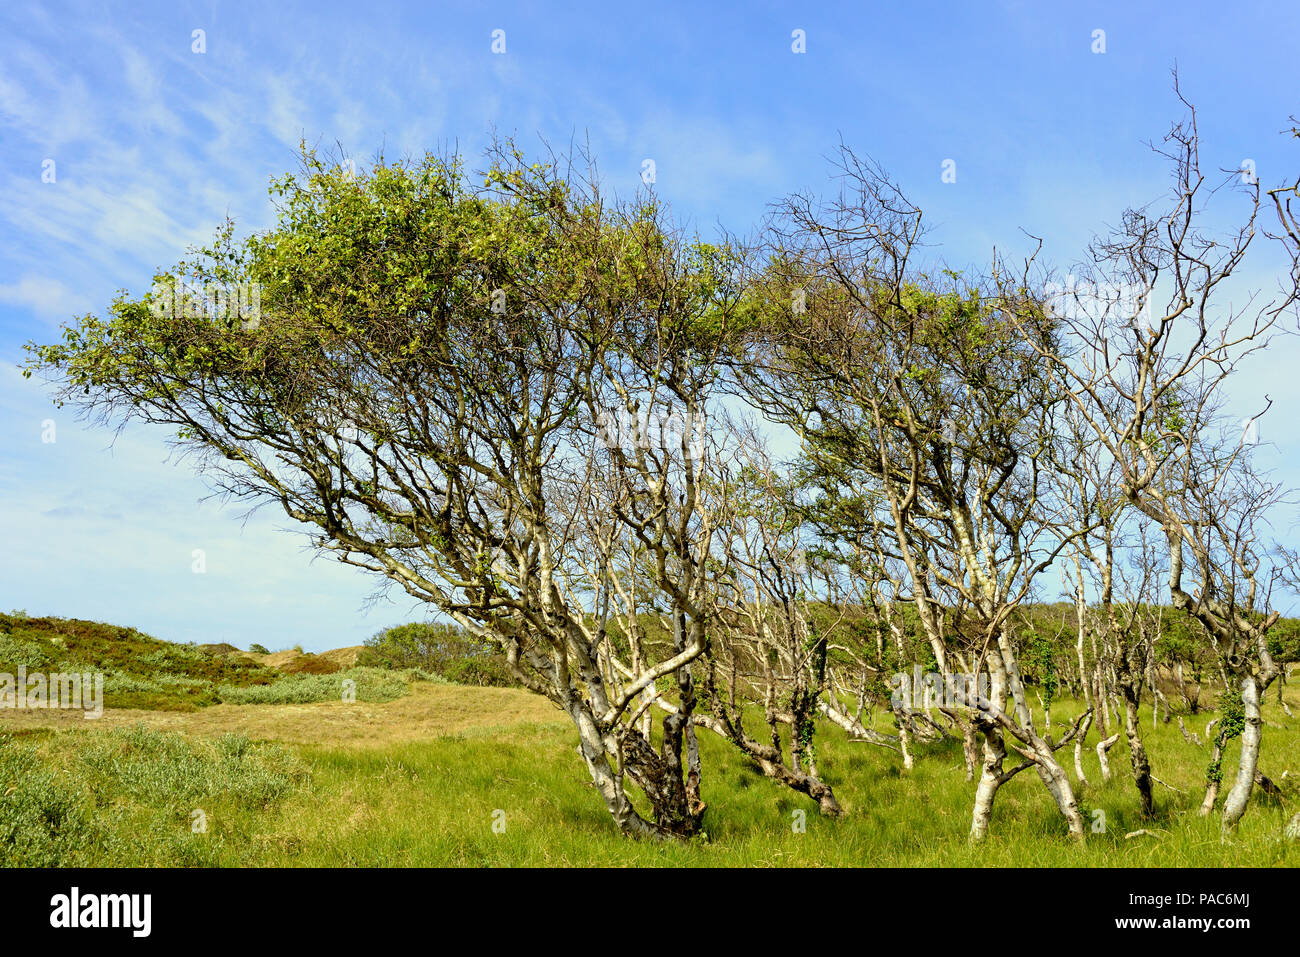 Birken (Betula), Wald mit bizarr gewachsenen Bäume, Norderney, Ostfriesische Inseln, Nordsee, Niedersachsen, Deutschland Stockfoto